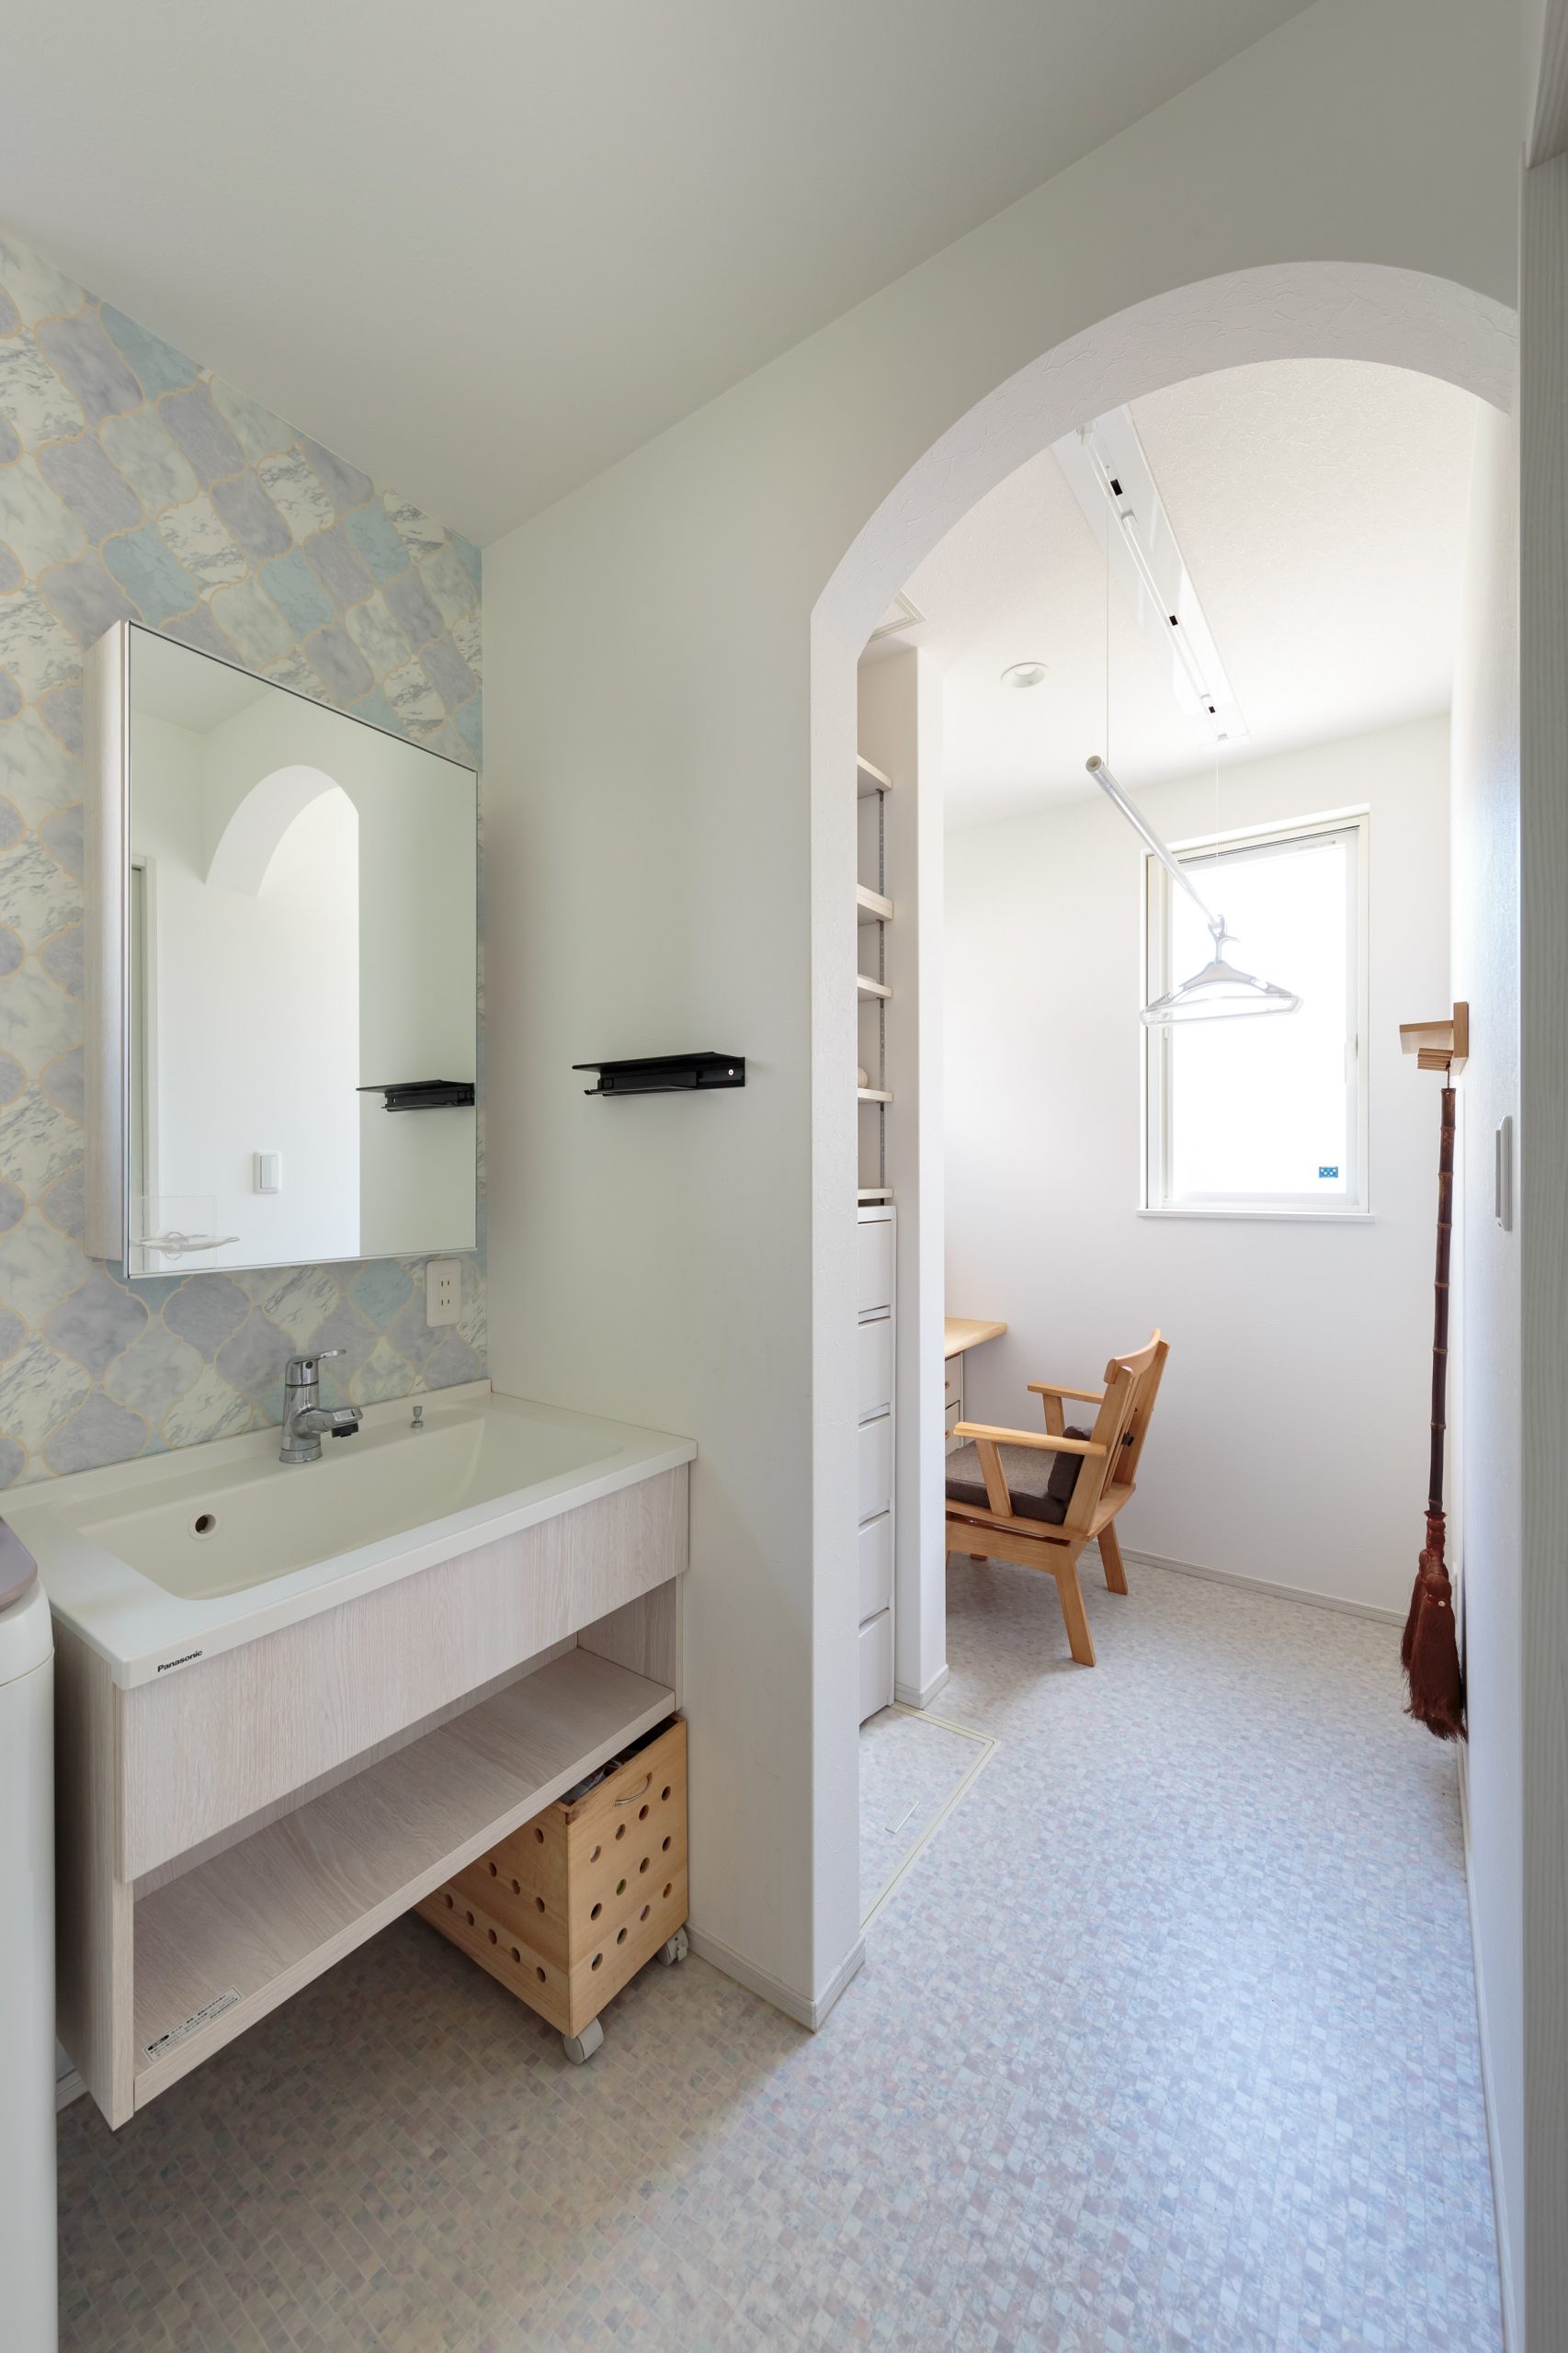 洗面脱衣室と家事コーナーを横並びにした機能的な間取り。アーチ型の垂れ壁でシンプルでちょっと可愛い空間をデザインしました。洗面台は標準仕様の中から造作に見える物を選んでいます。